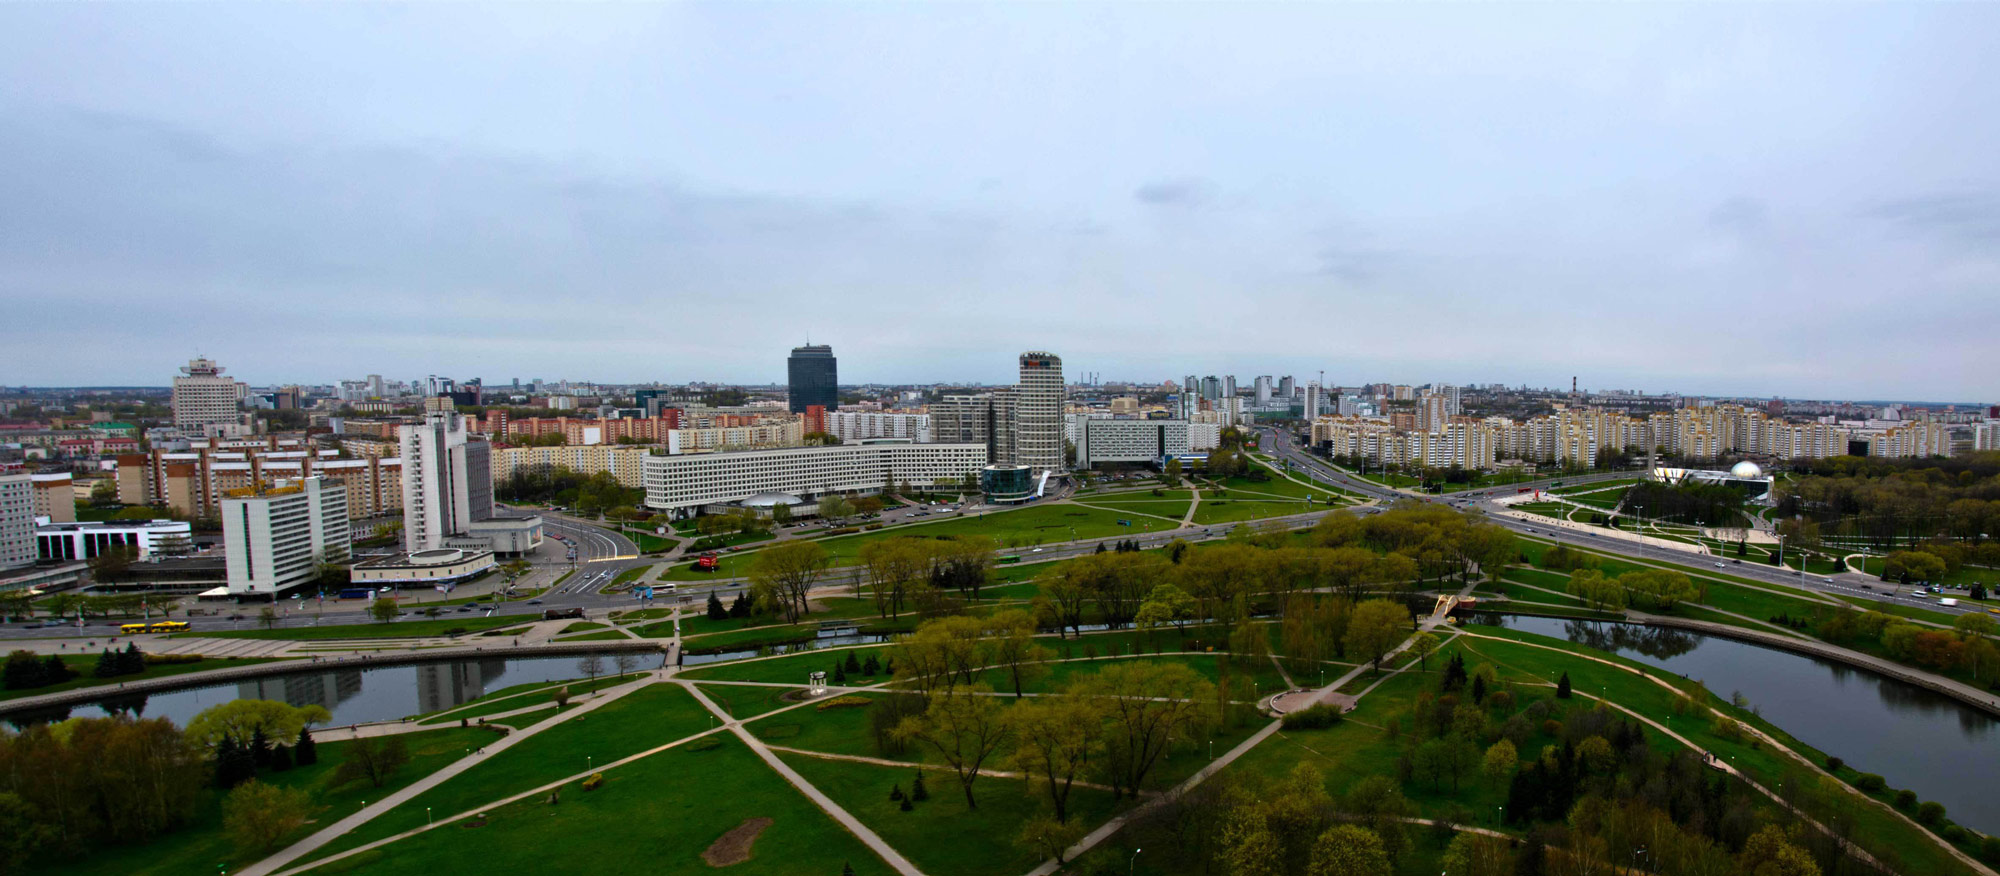 Панорама Минска со смотровой площадки гостиницы "Беларусь"